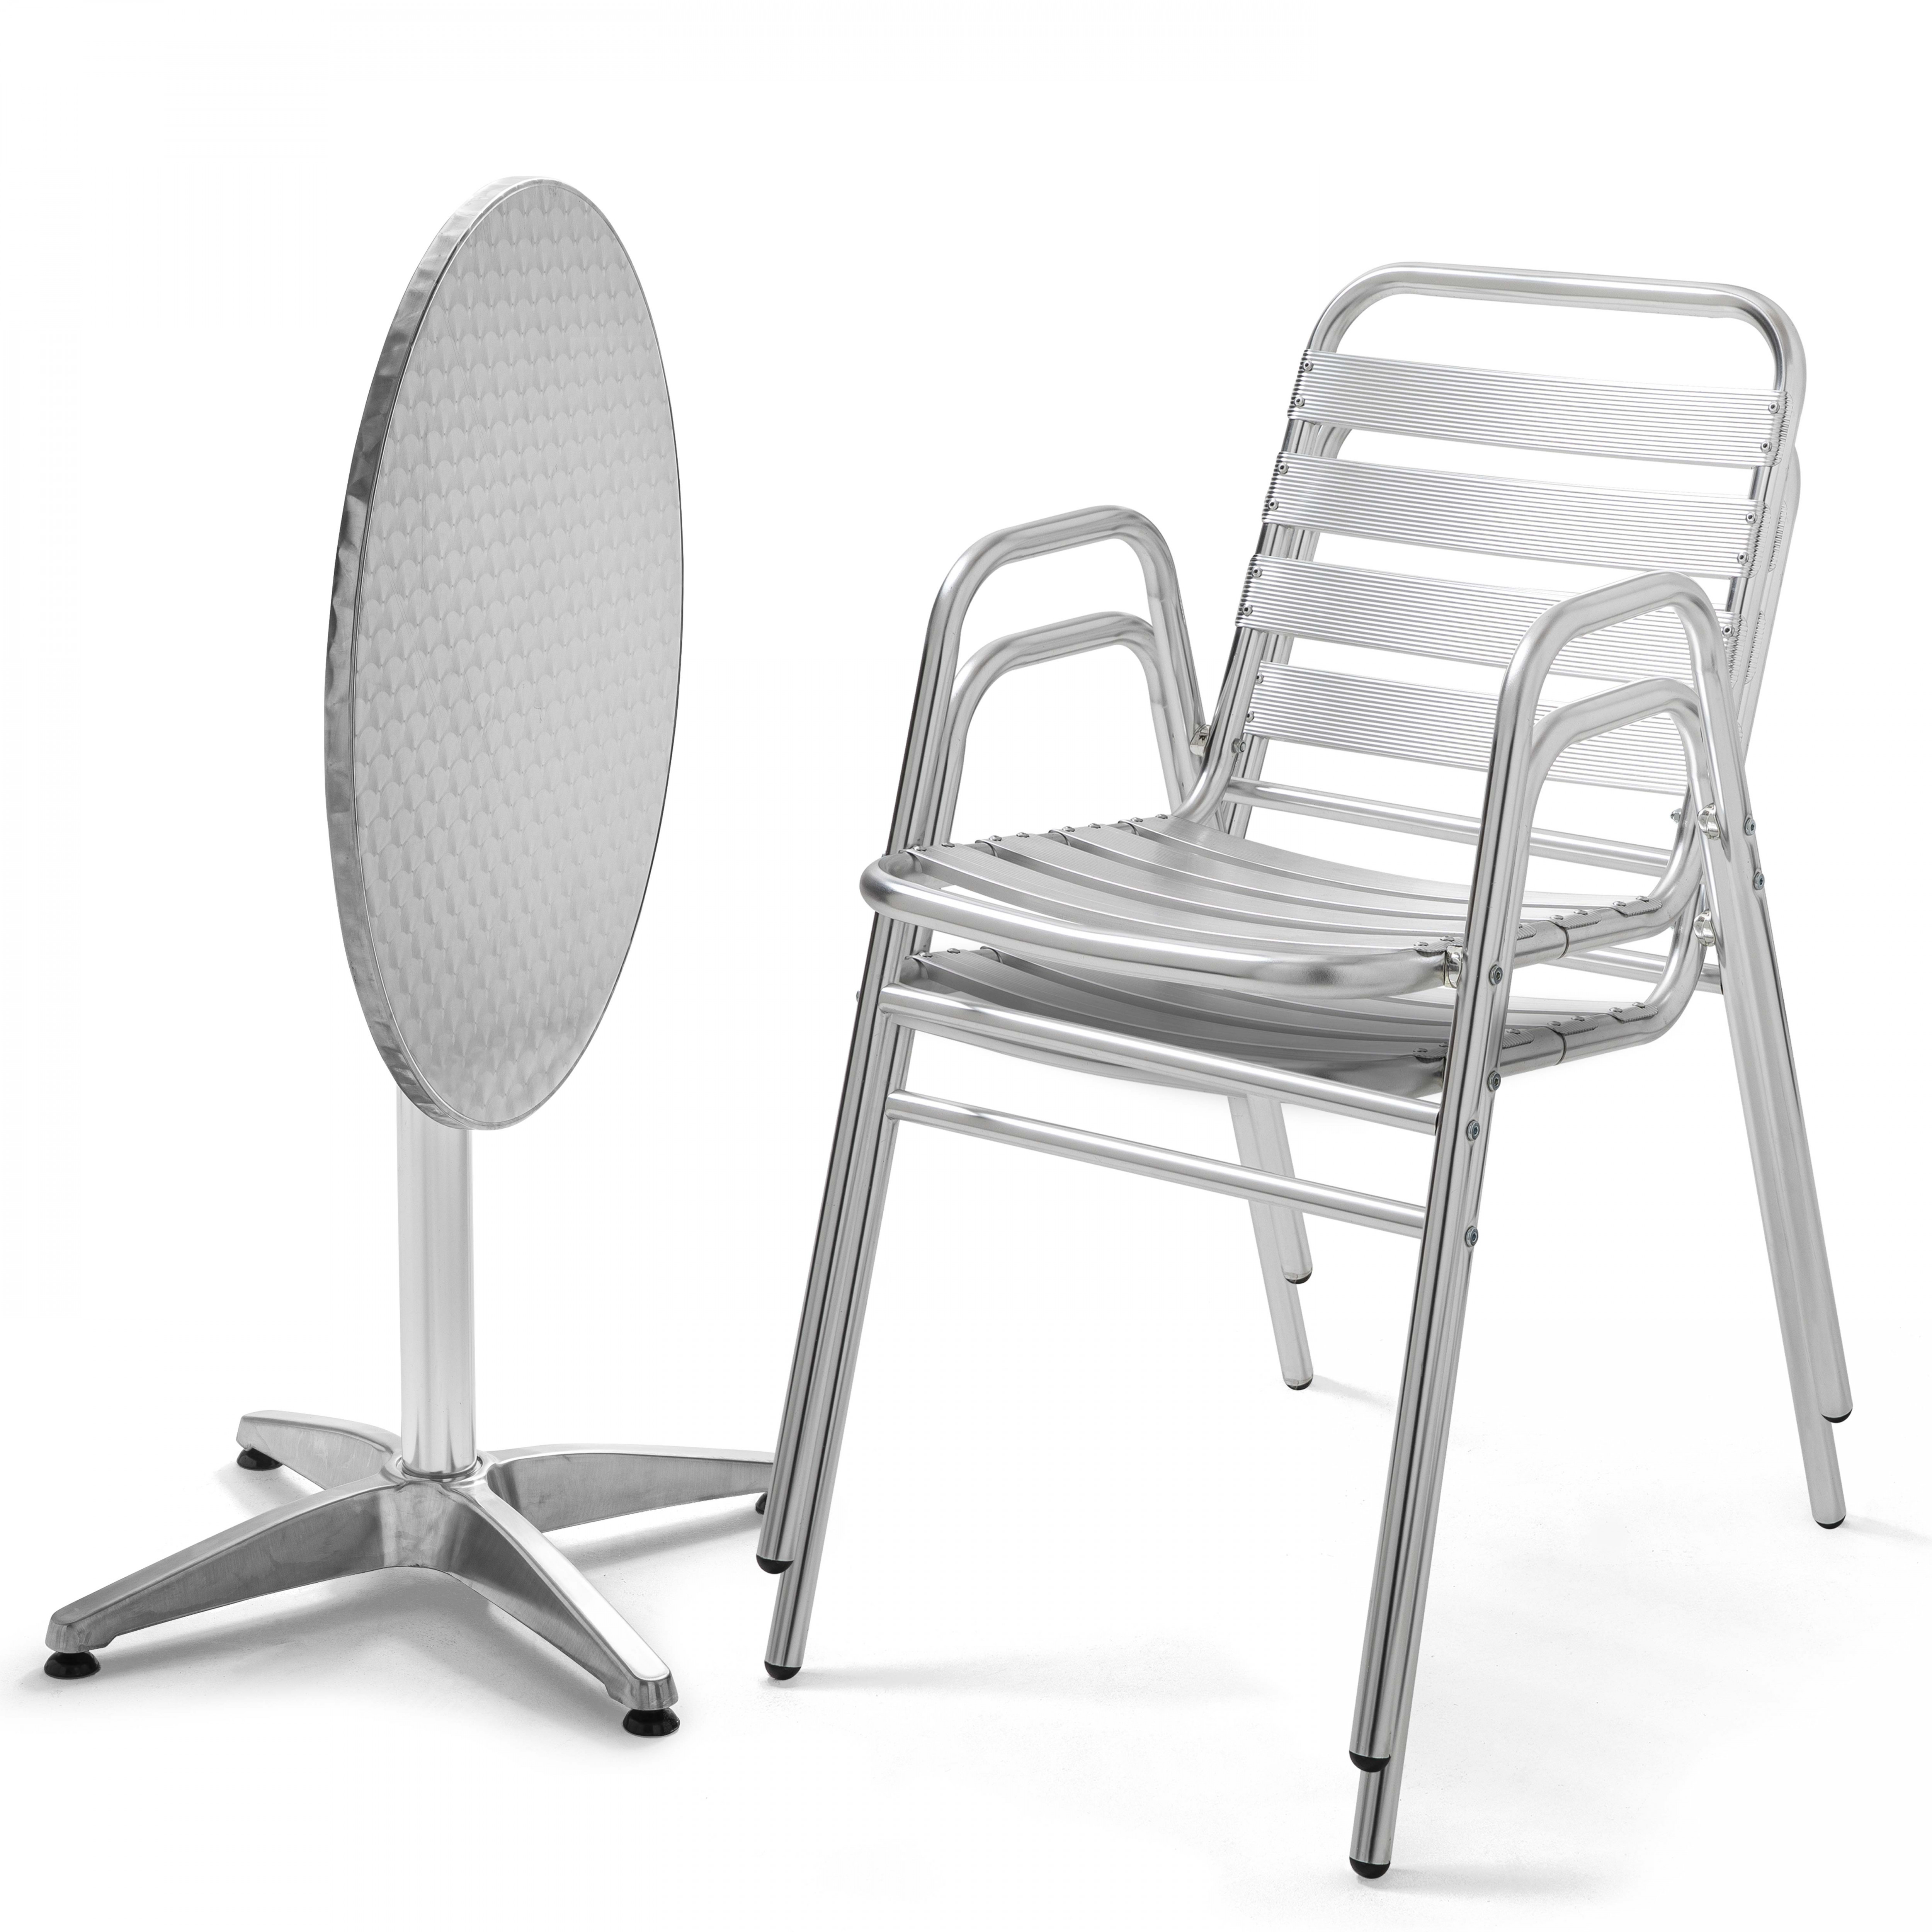 Table de jardin ronde en aluminium + 2 chaises